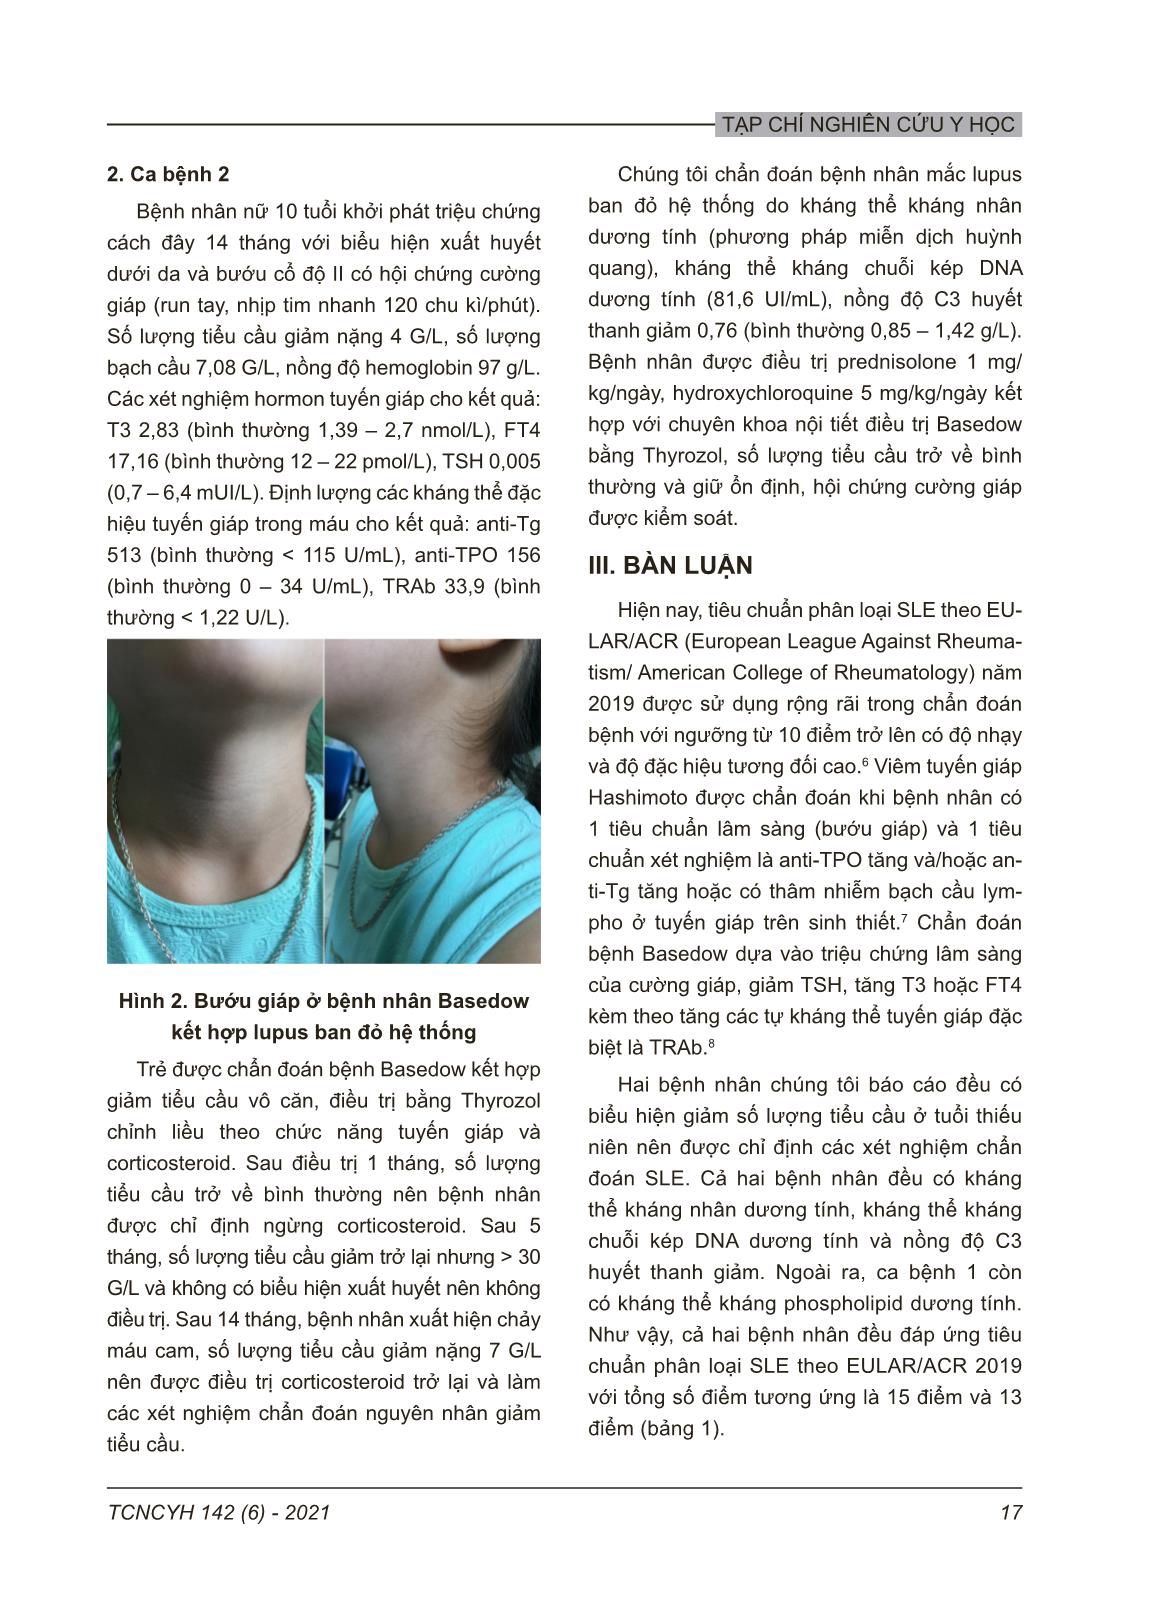 Bệnh tuyến giáp tự miễn kết hợp với lupus ban đỏ hệ thống ở trẻ em: Báo cáo 2 trường hợp trang 3